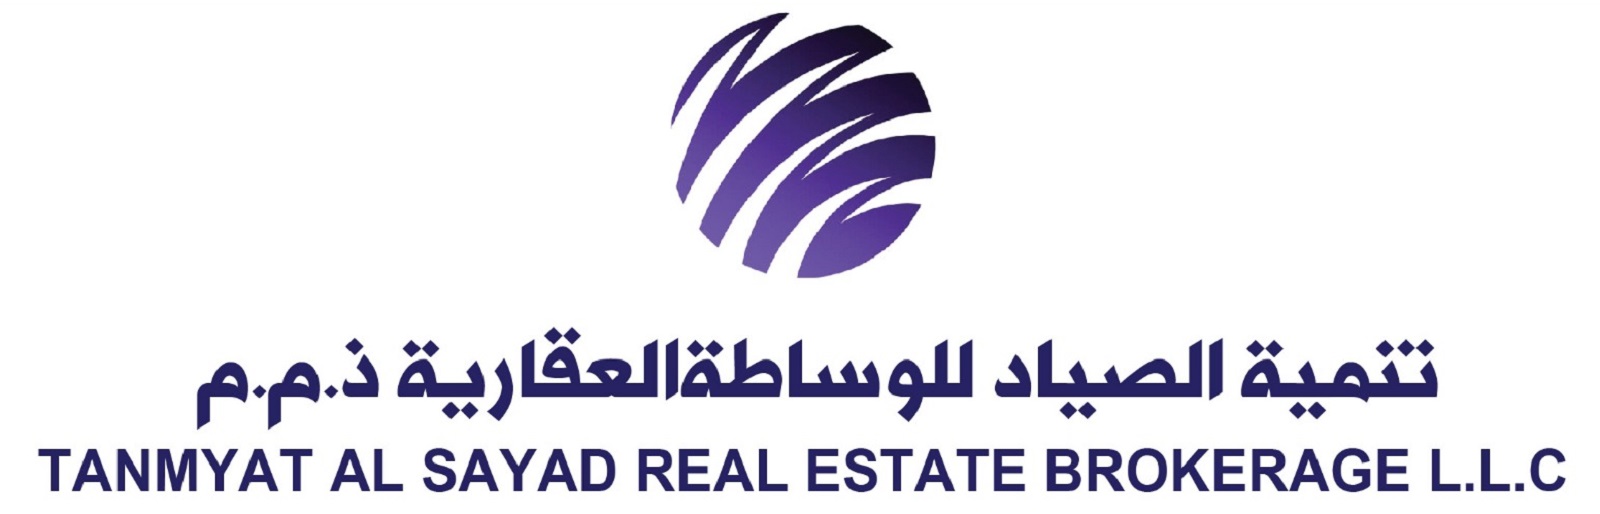 Tanmyat Al Sayad Real Estate